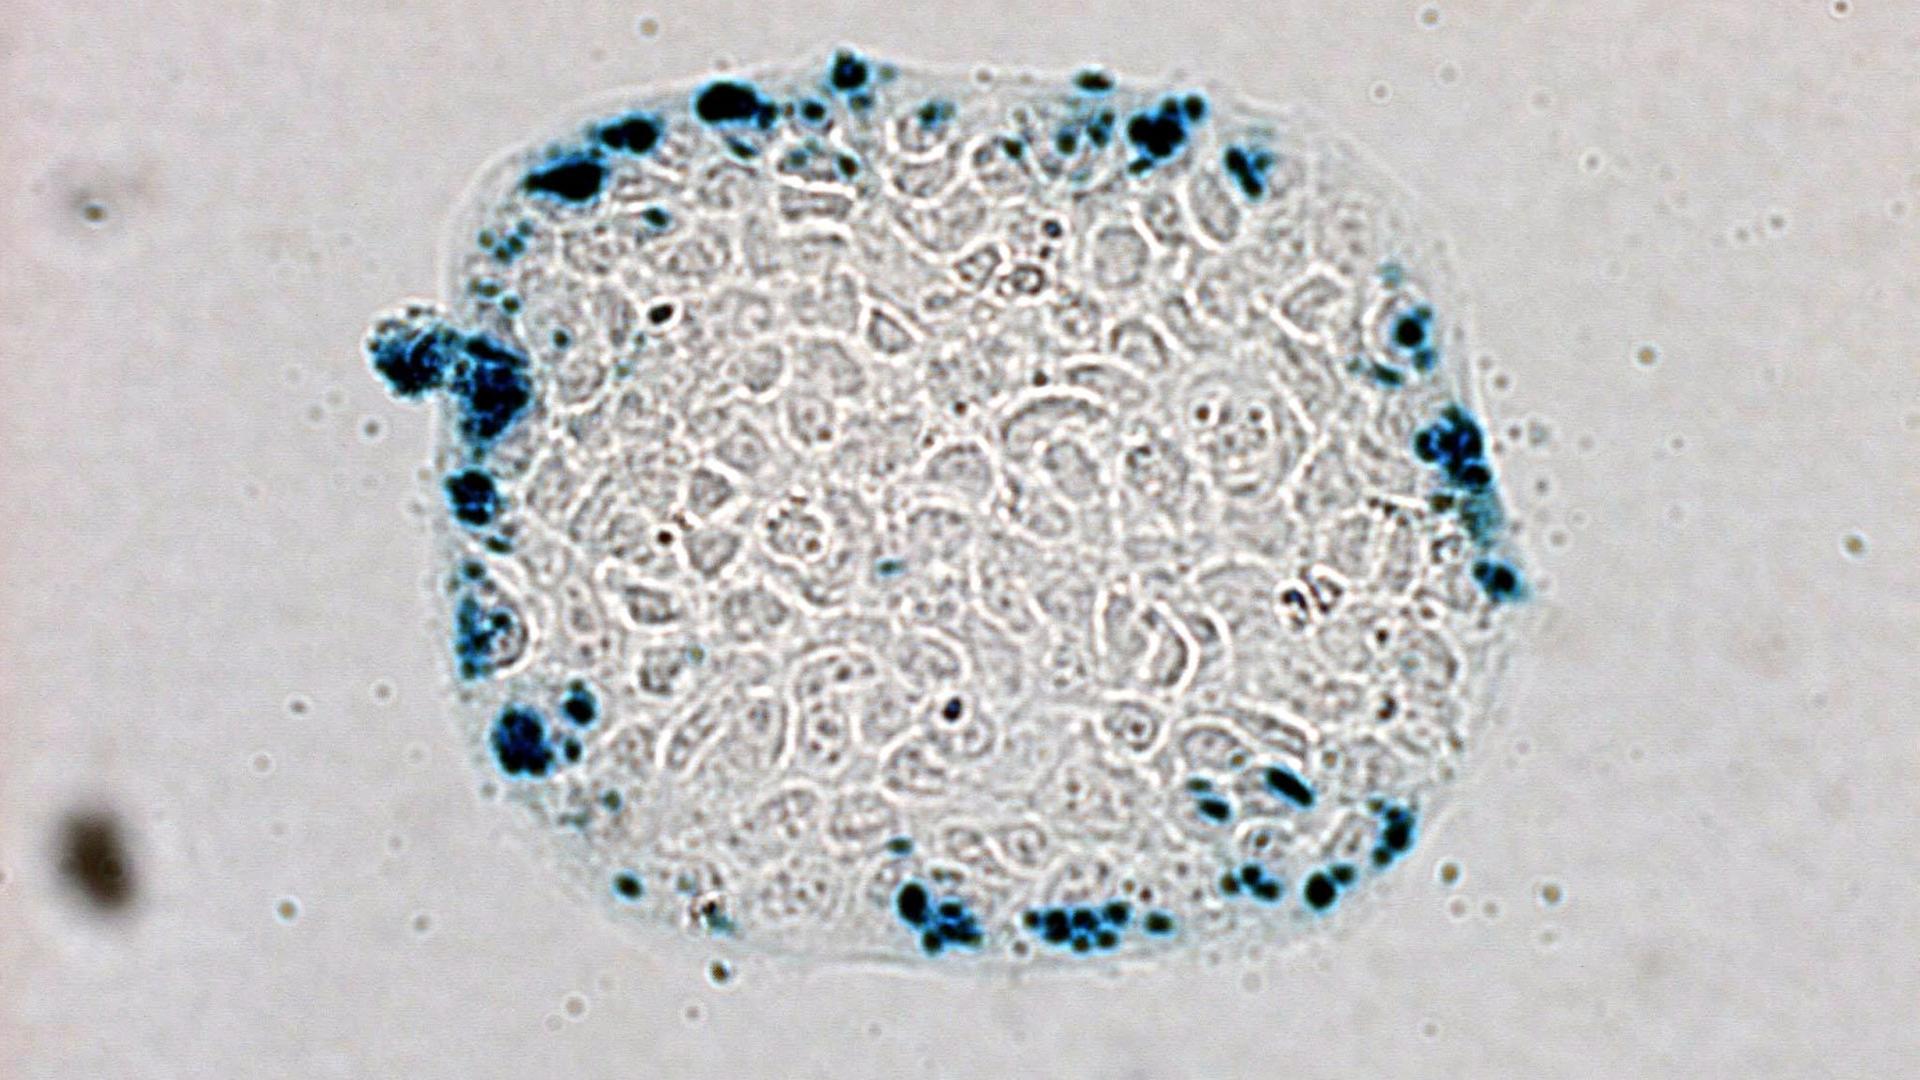 Mikroskopische Ansicht von Darmkrebszellen, denen von Wissenschaftlern genetisch veränderte E. coli Bakterien injiziert wurden.